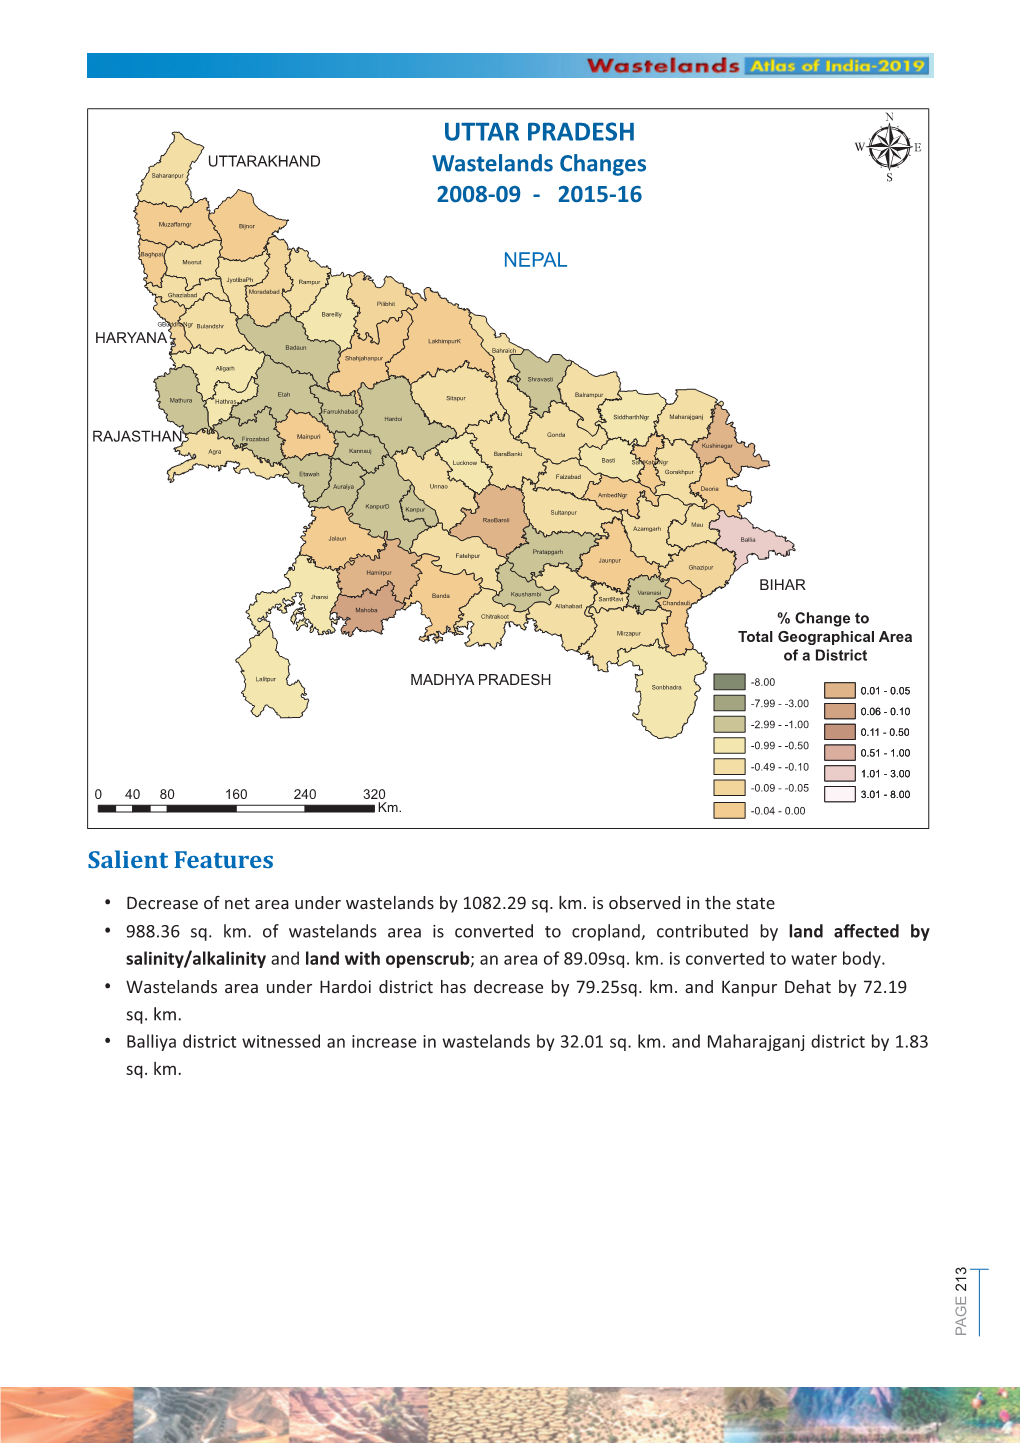 UTTAR PRADESH Spatial Distribution of Wastelands 2015-16